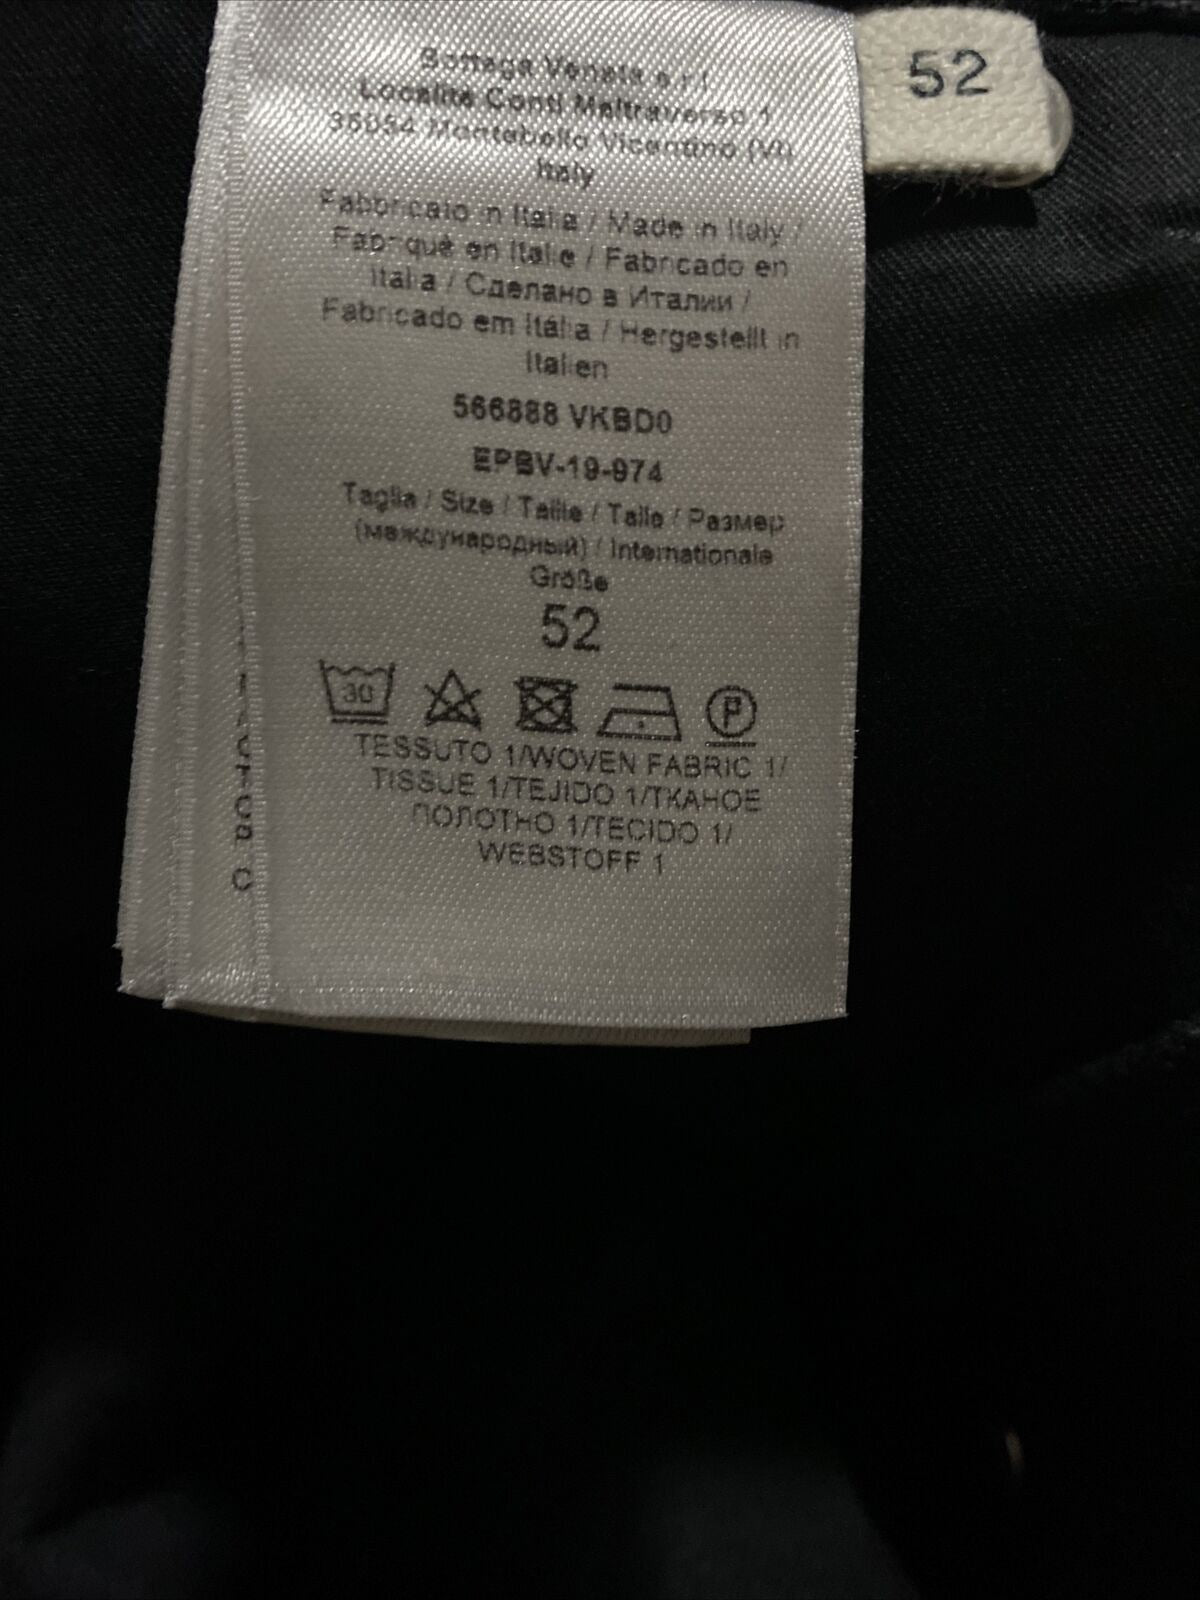 NWT 590 долларов США Bottega Veneta Мужские джинсовые брюки, черный деним 36 США/52 ЕС Италия